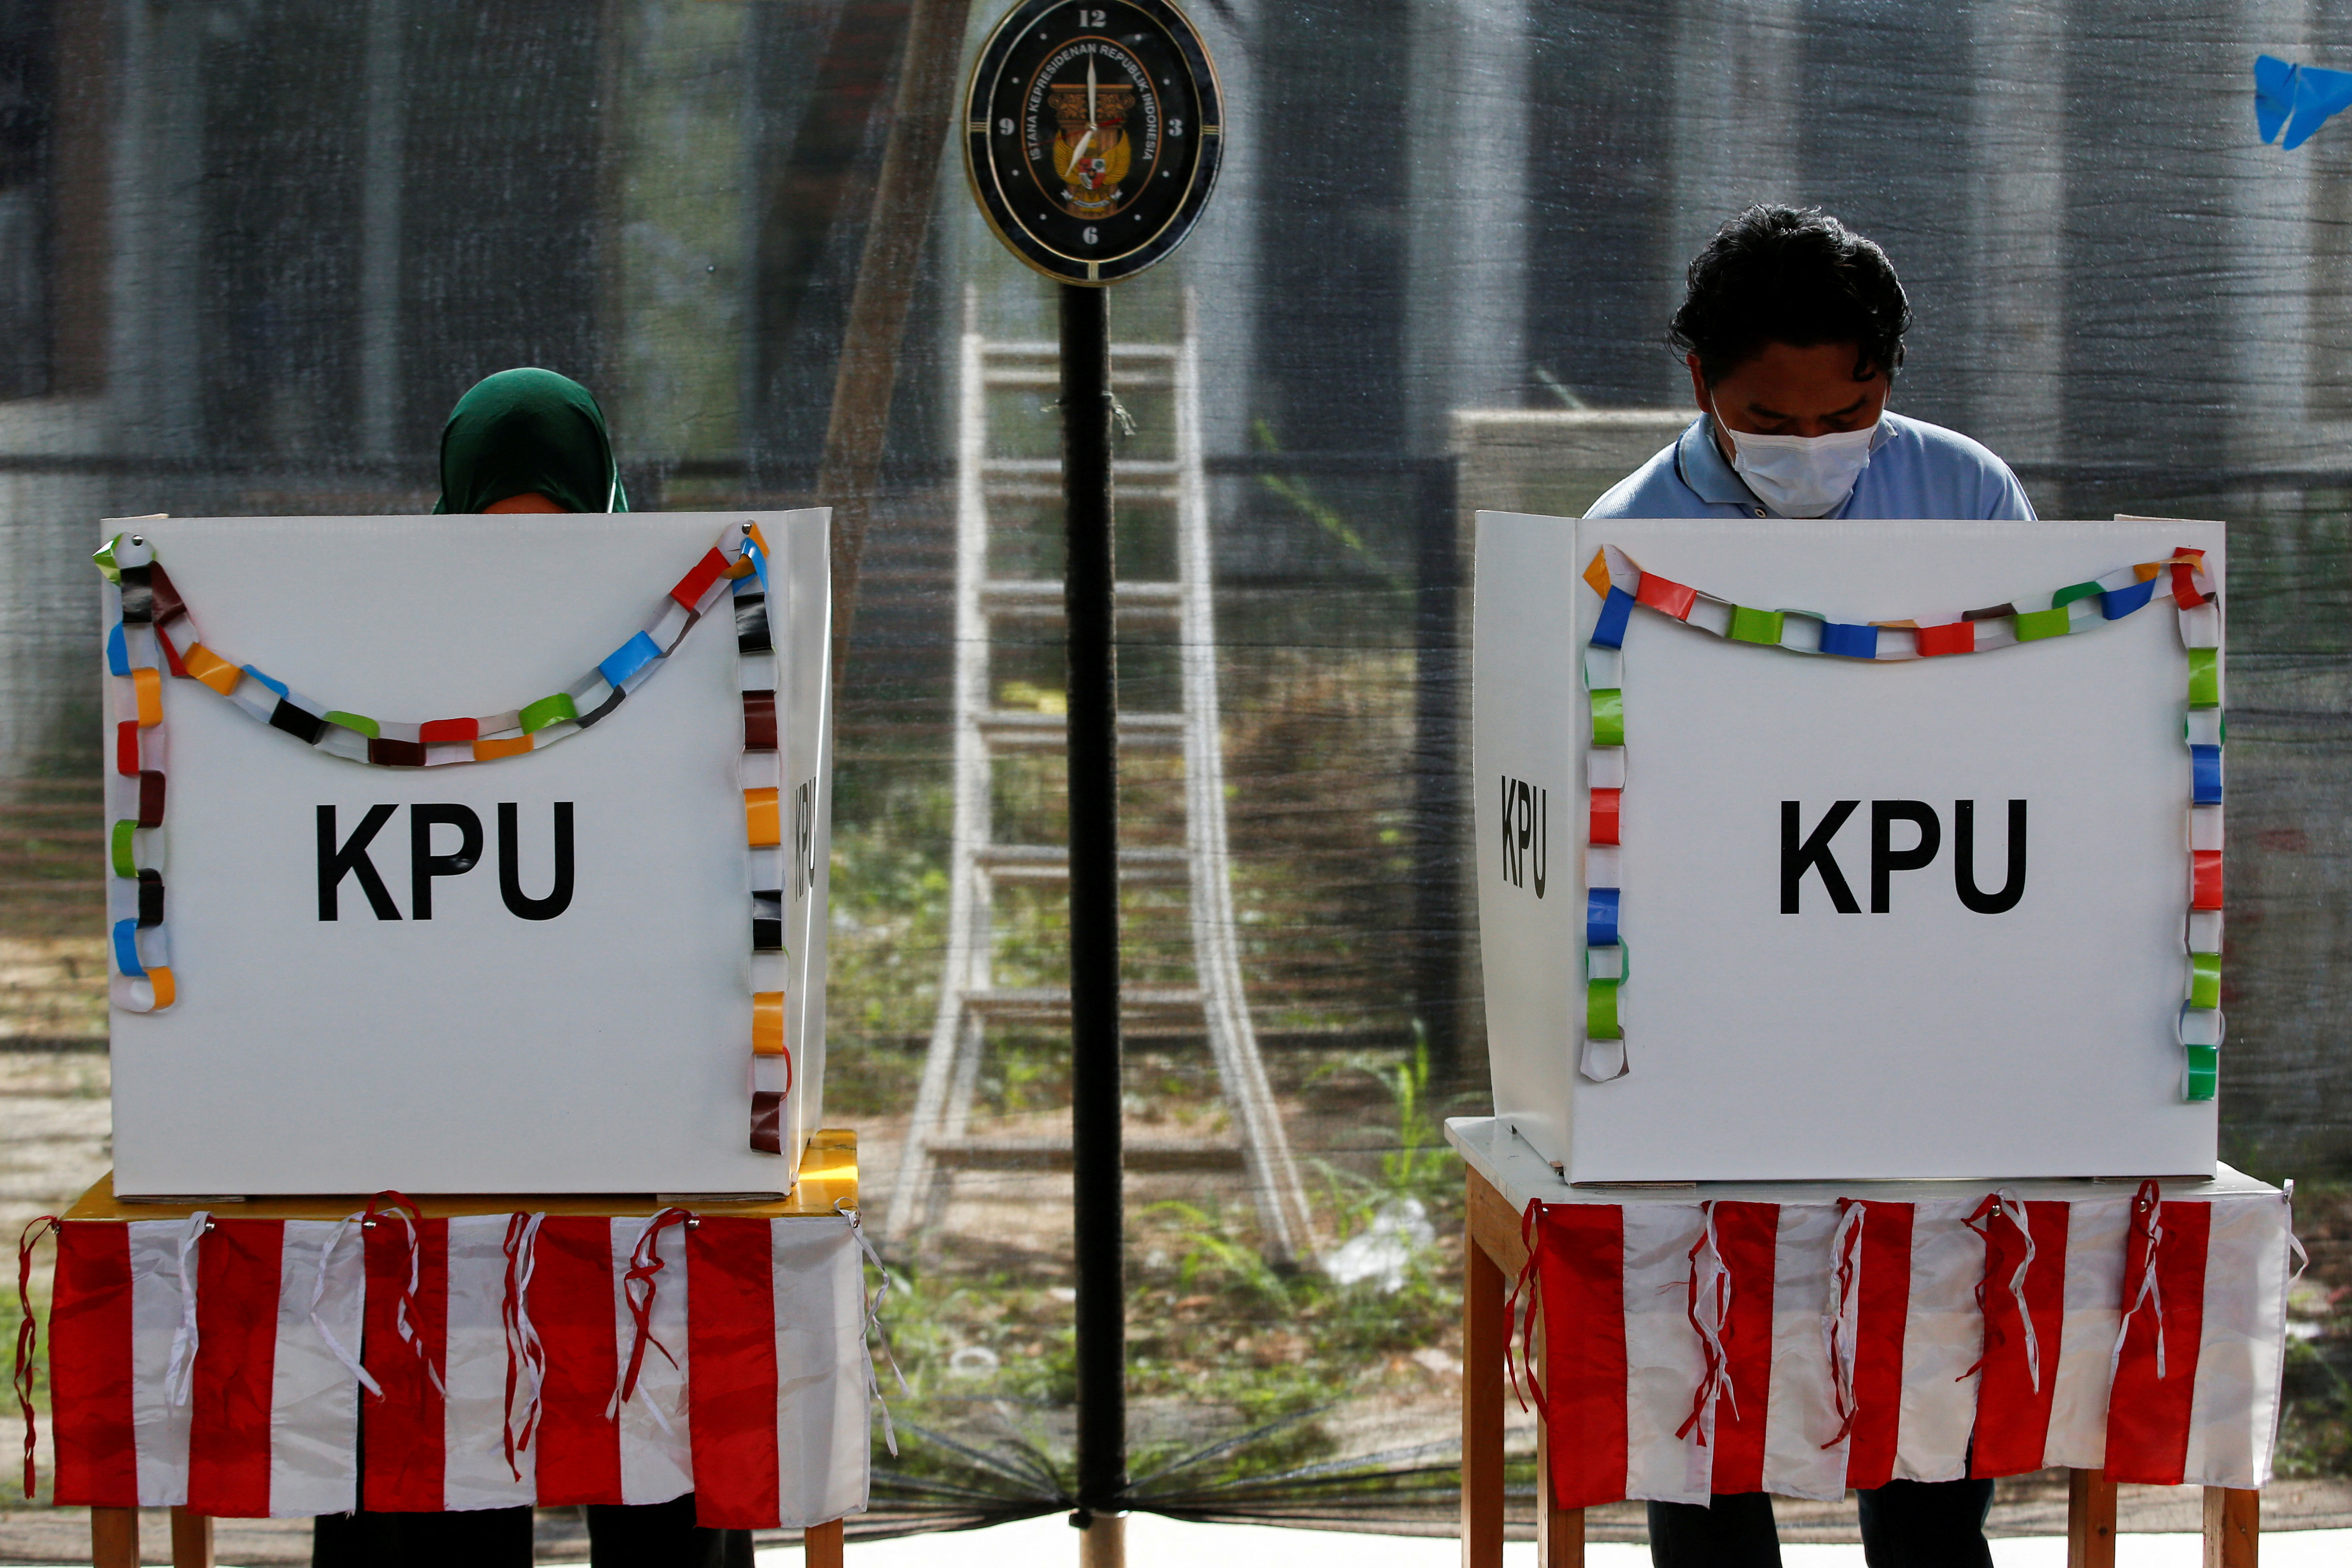 Regional elections in Tangerang, near Jakarta